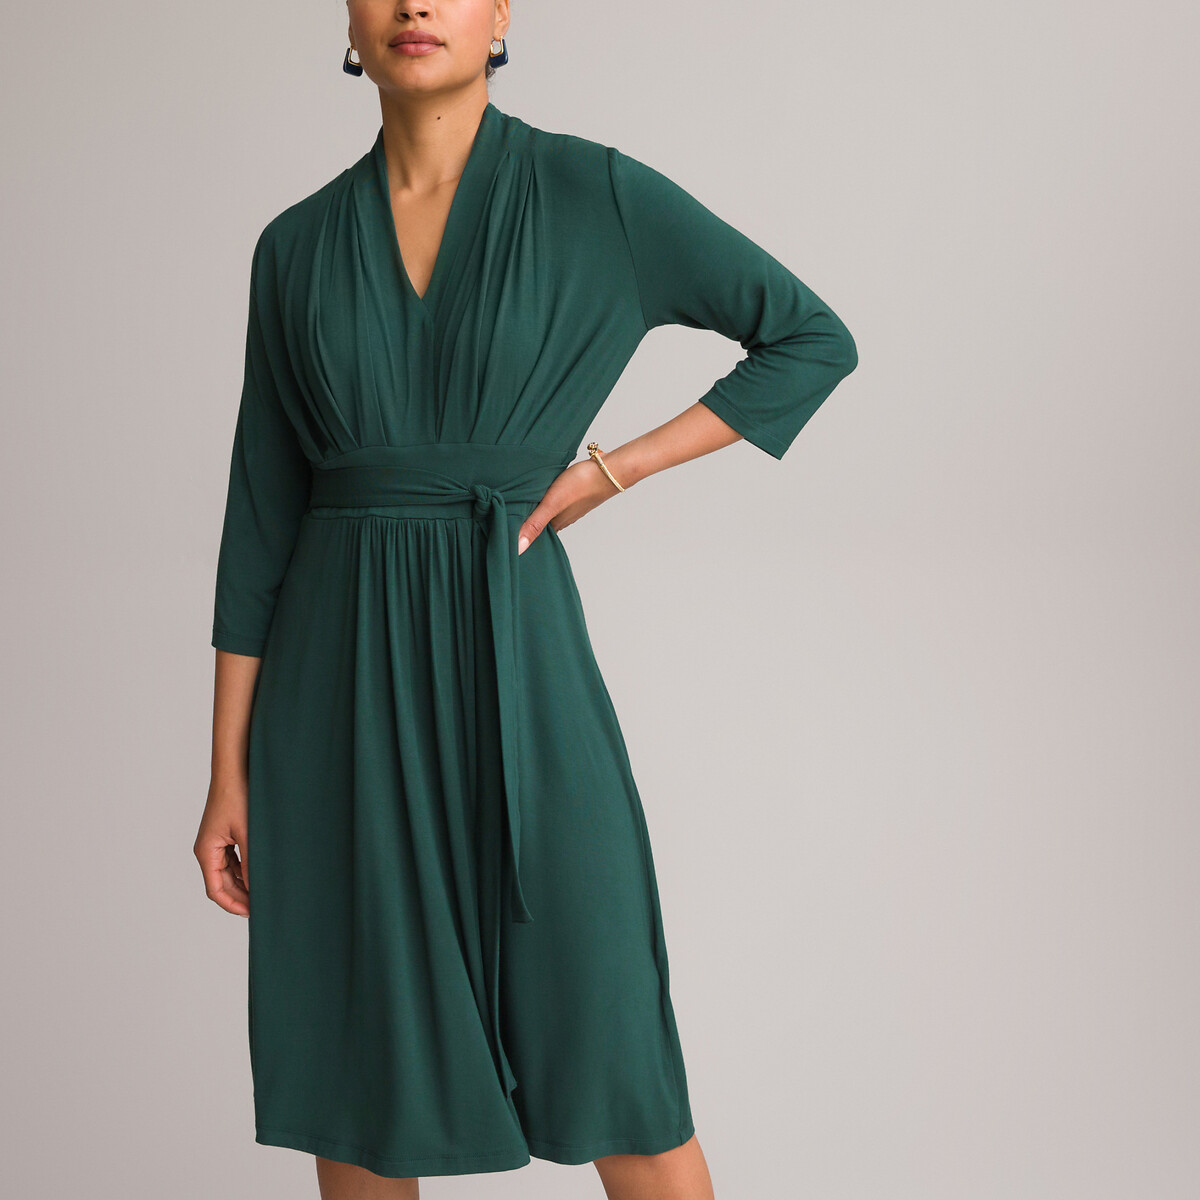 Платье ANNE WEYBURN Платье Расклешенное из струящегося трикотажа с рукавами 34 54 зеленый, размер 54 - фото 2